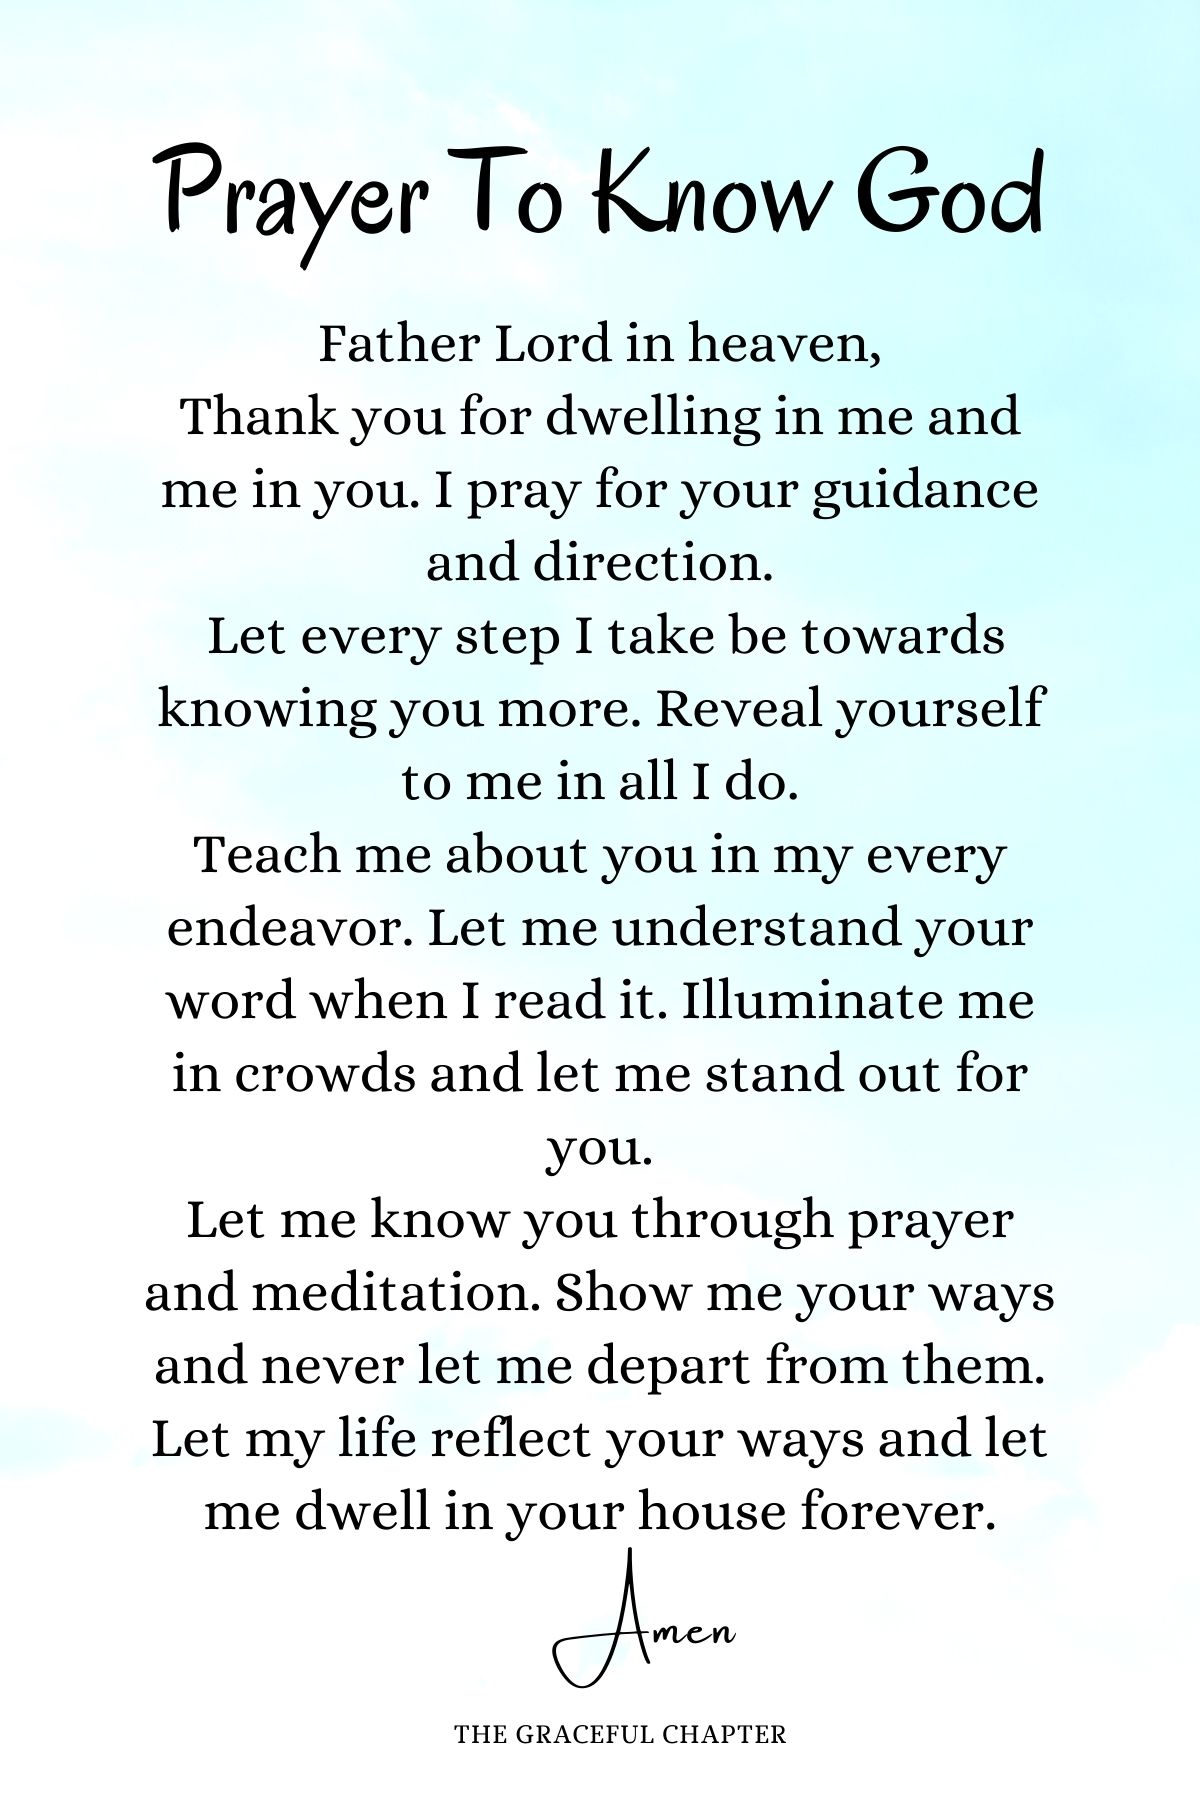 Prayer to know God